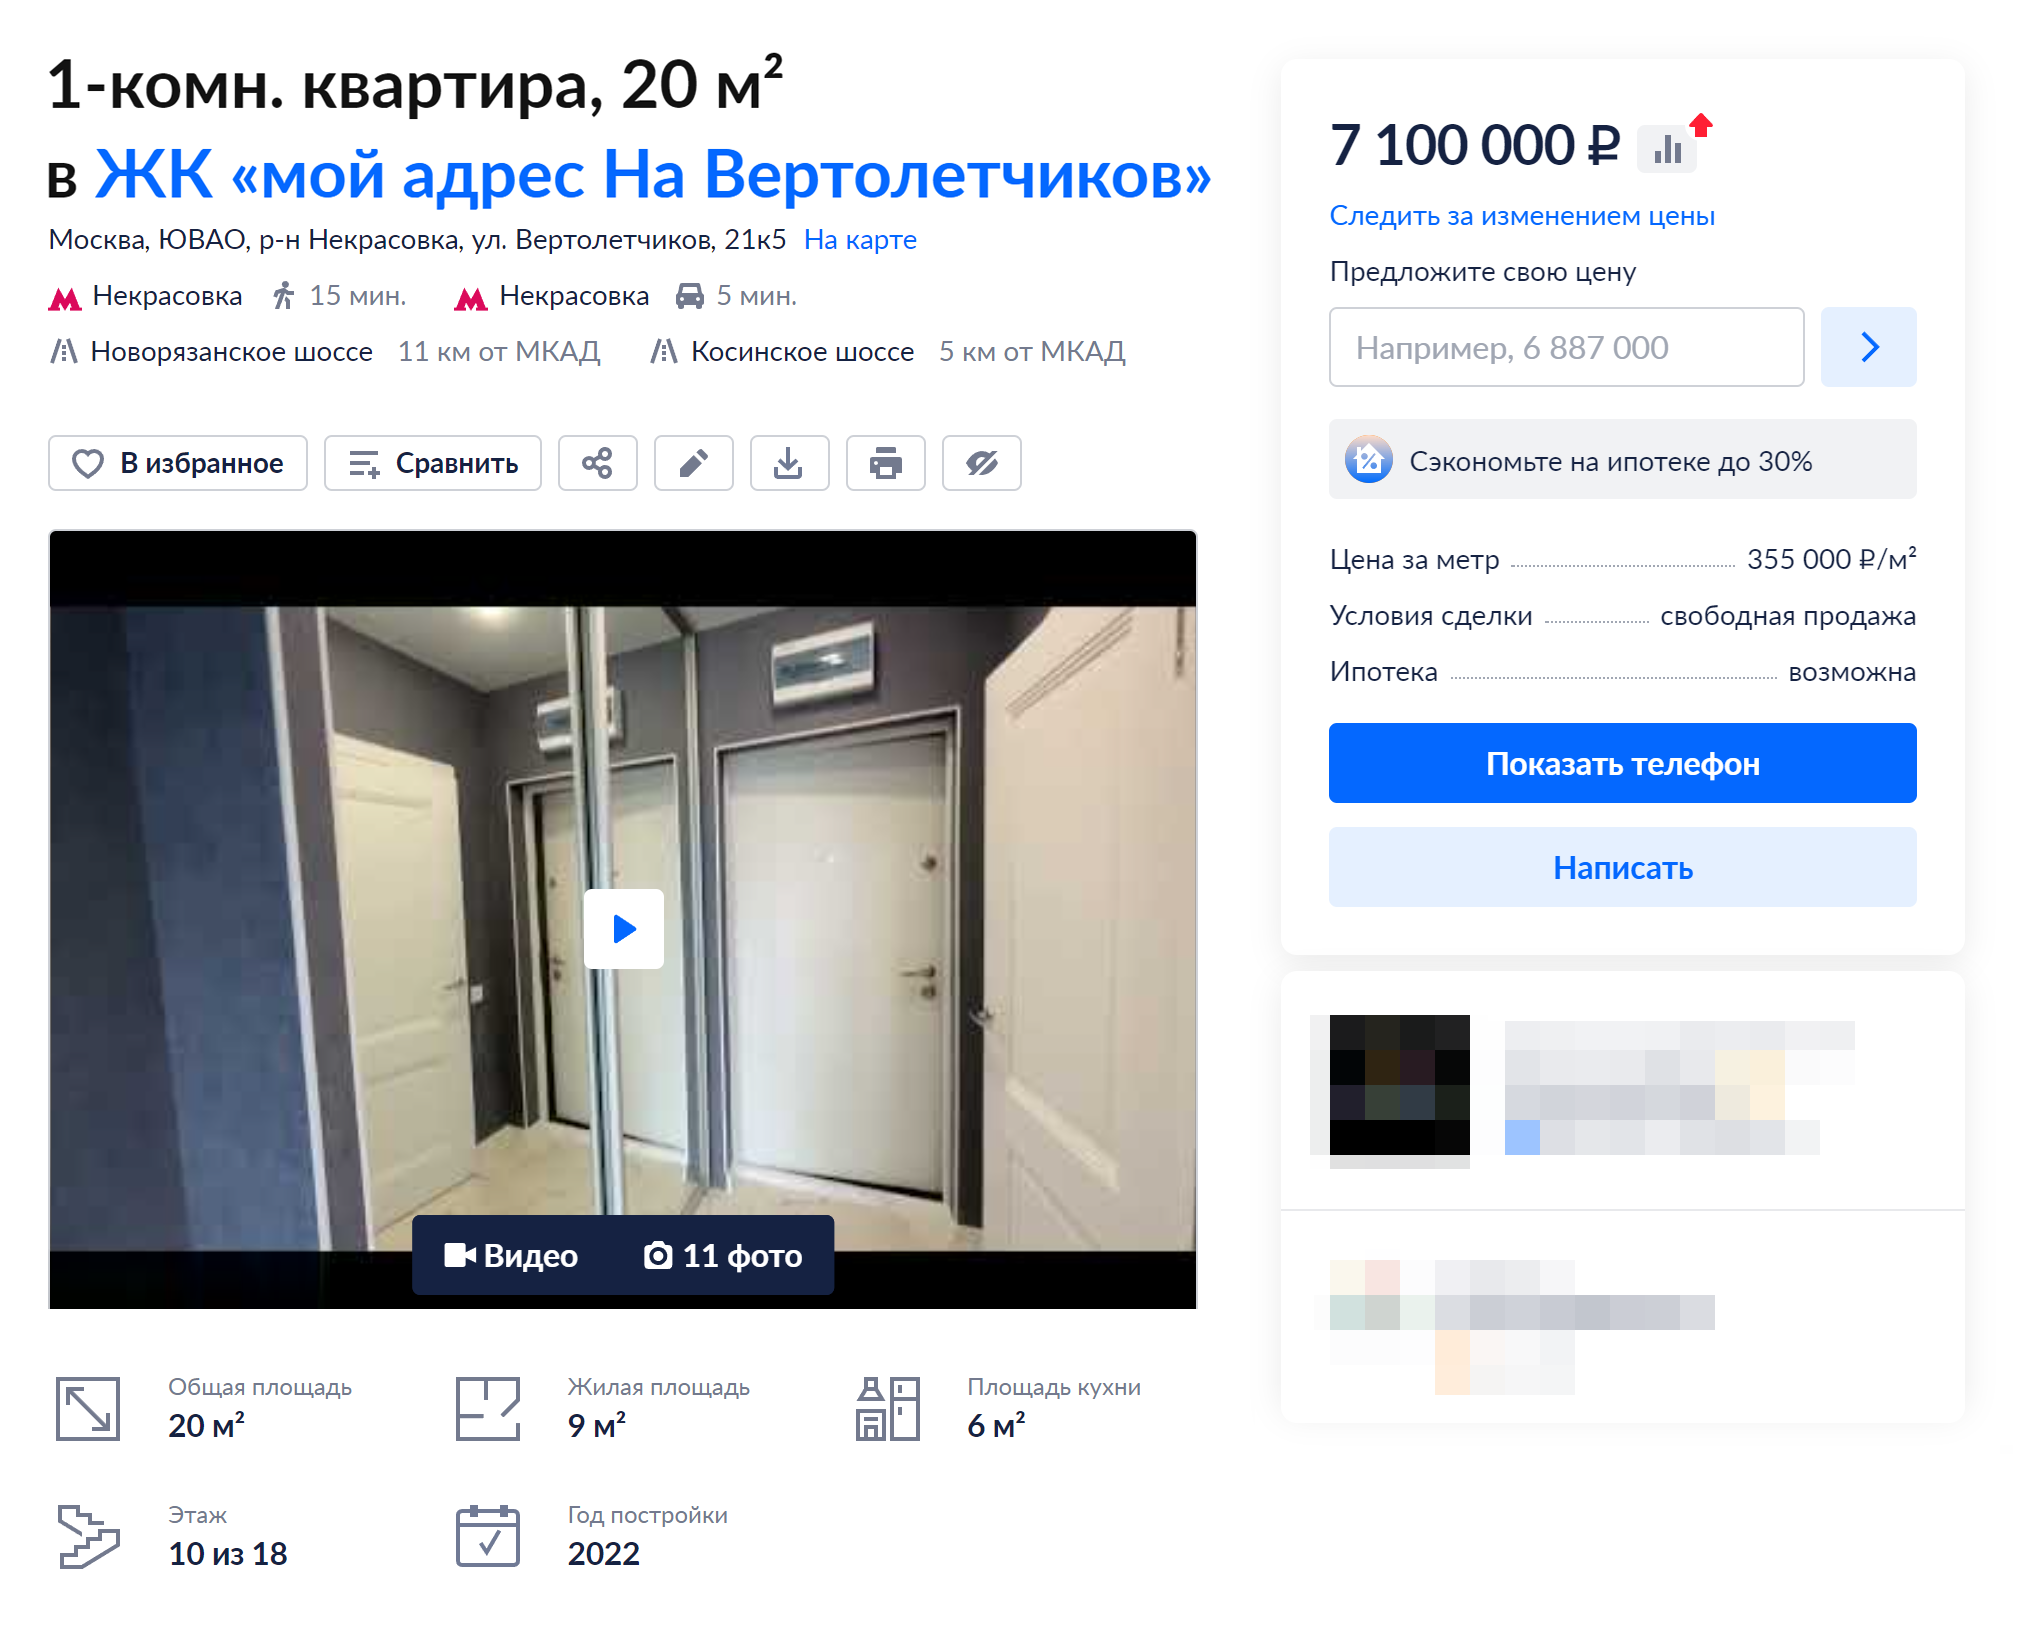 Цены на вторичку в Некрасовке начинаются от 7,1 млн рублей. Источник: cian.ru